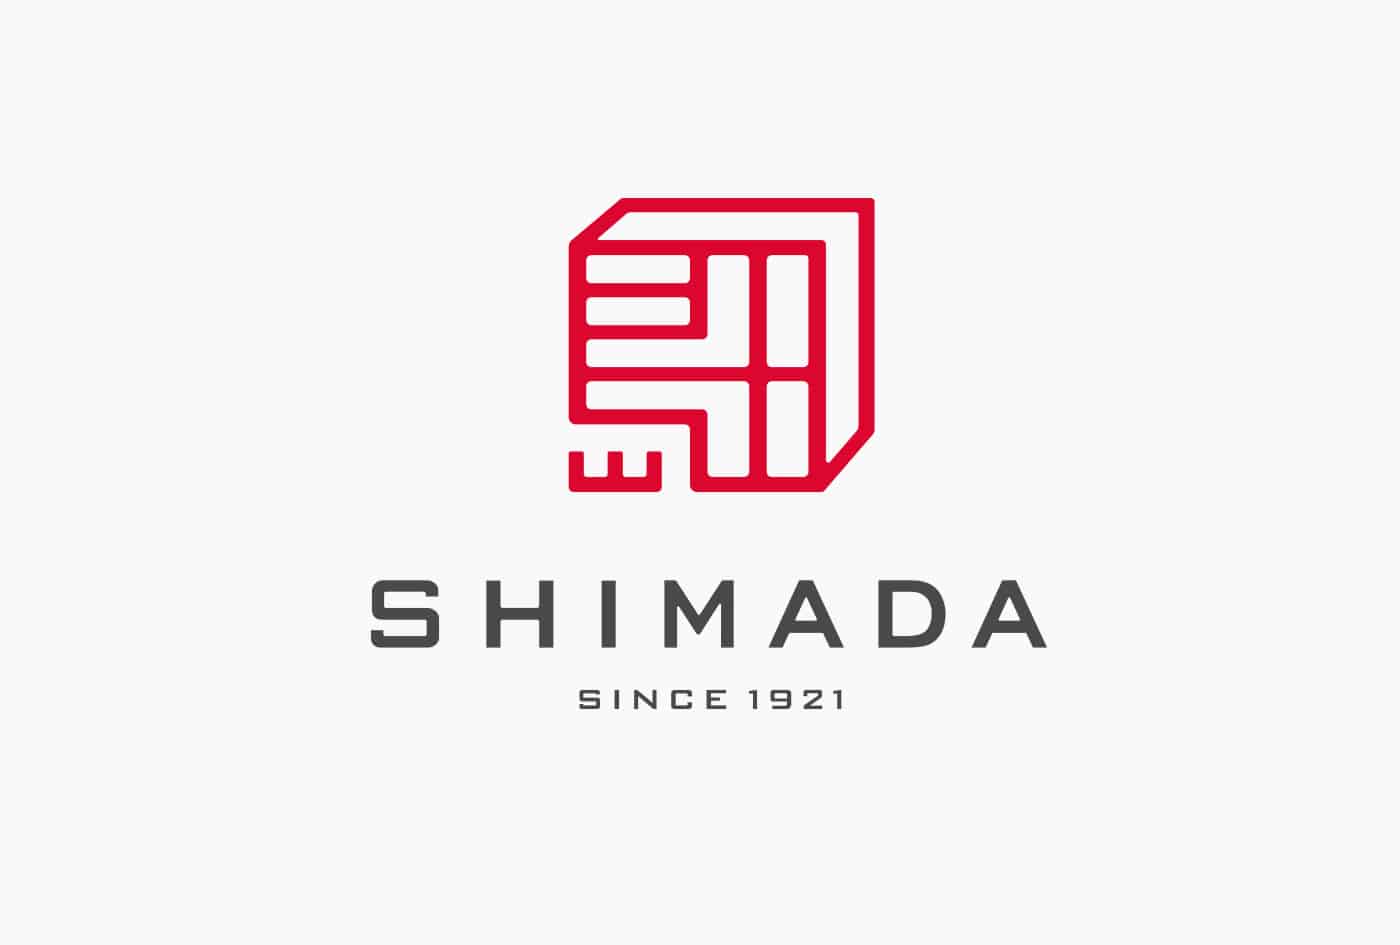 shimada_logo_1_since